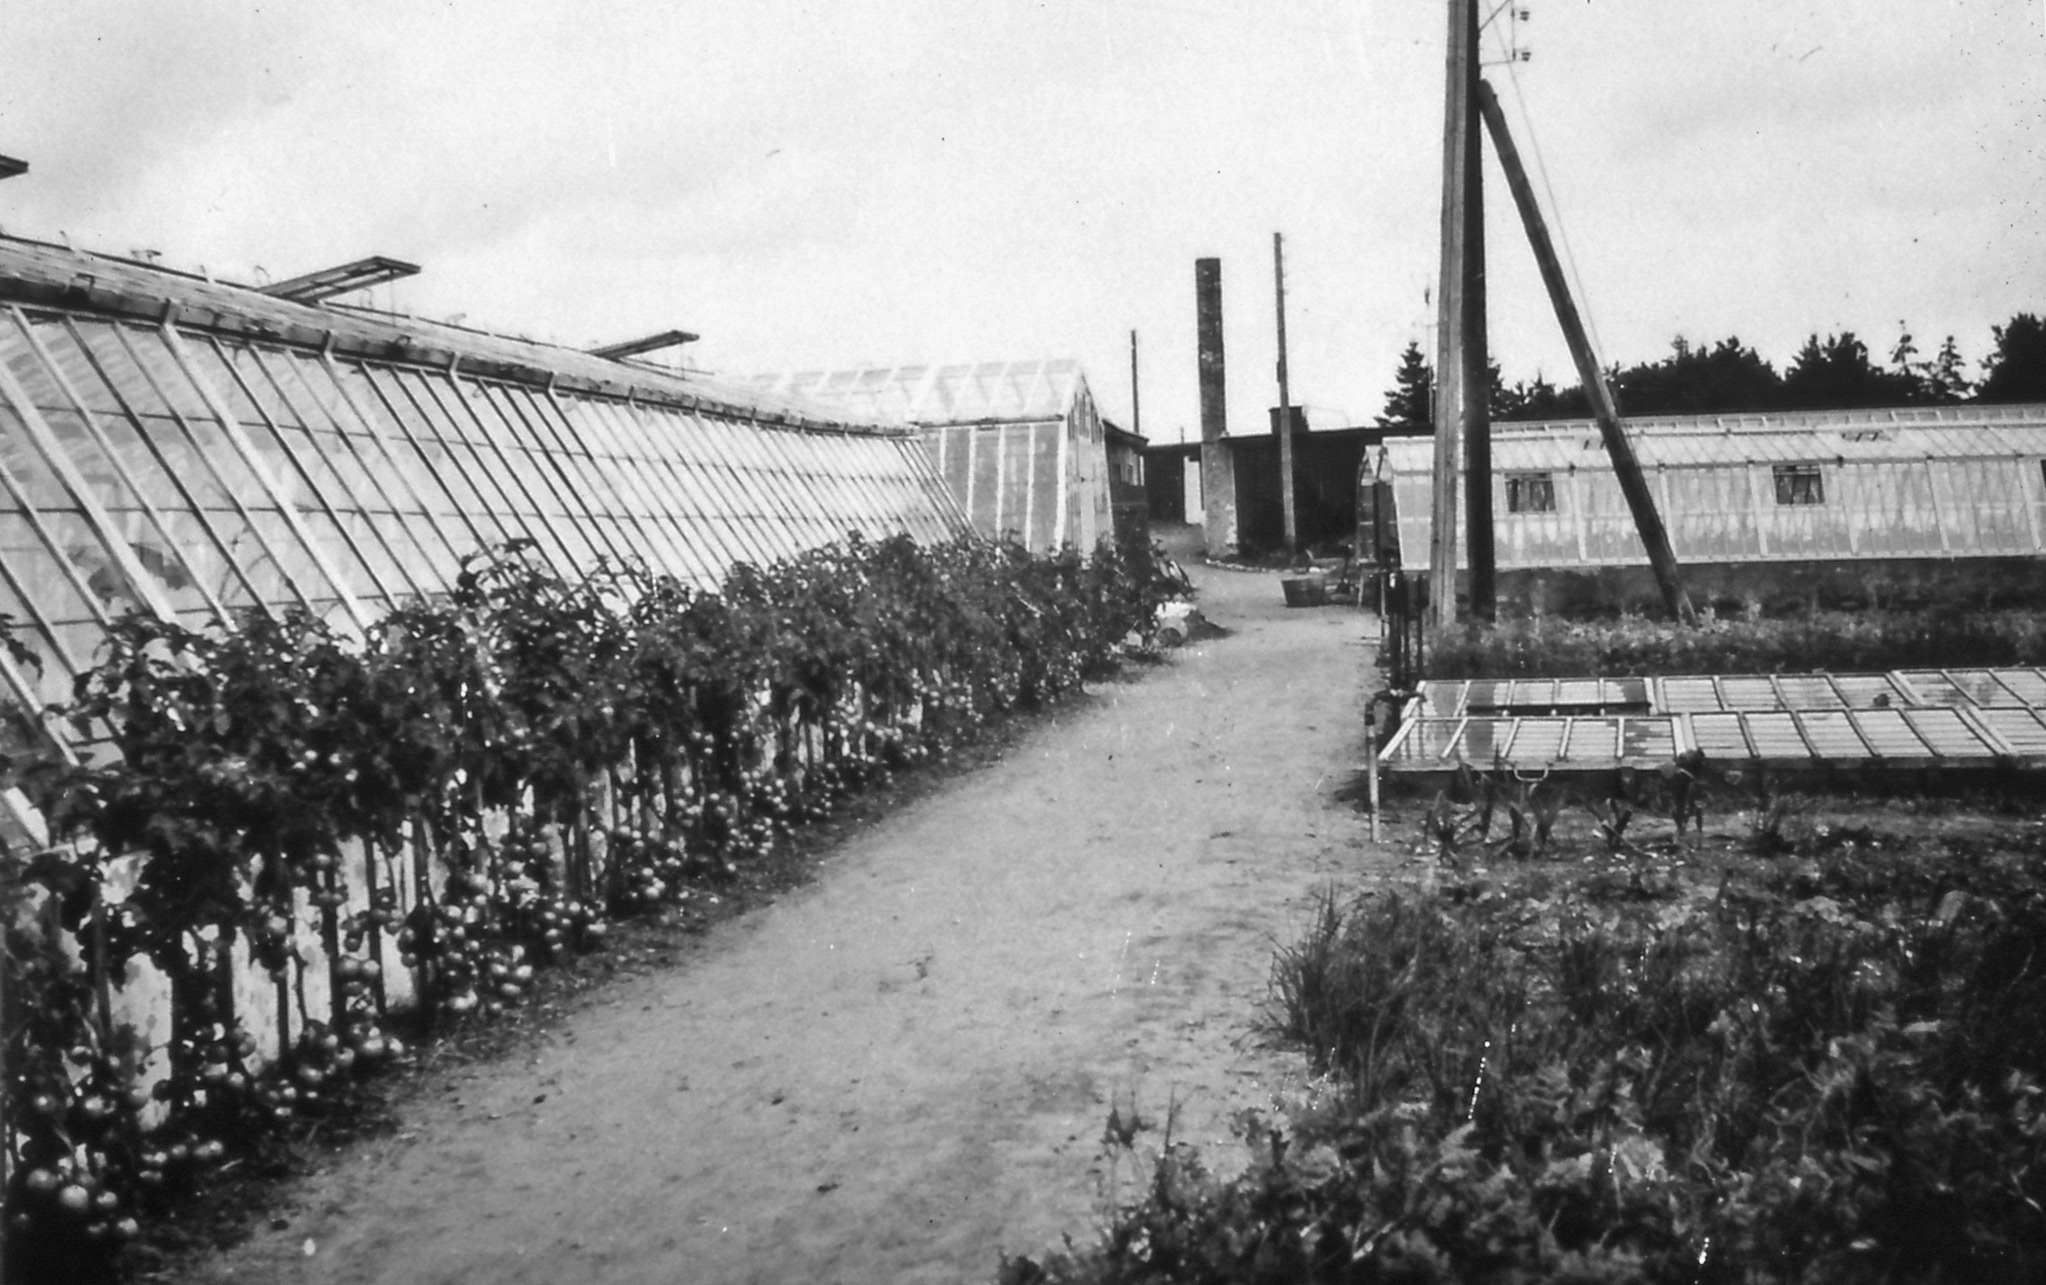 22 6.51-1945. Også i gartneriet var der fortsat stor aktivitet, og mange frivillige hjalp til med arbejdet i drivhusene, i mistbænkeafdelingen og på friland. - tb 6.52-1943.